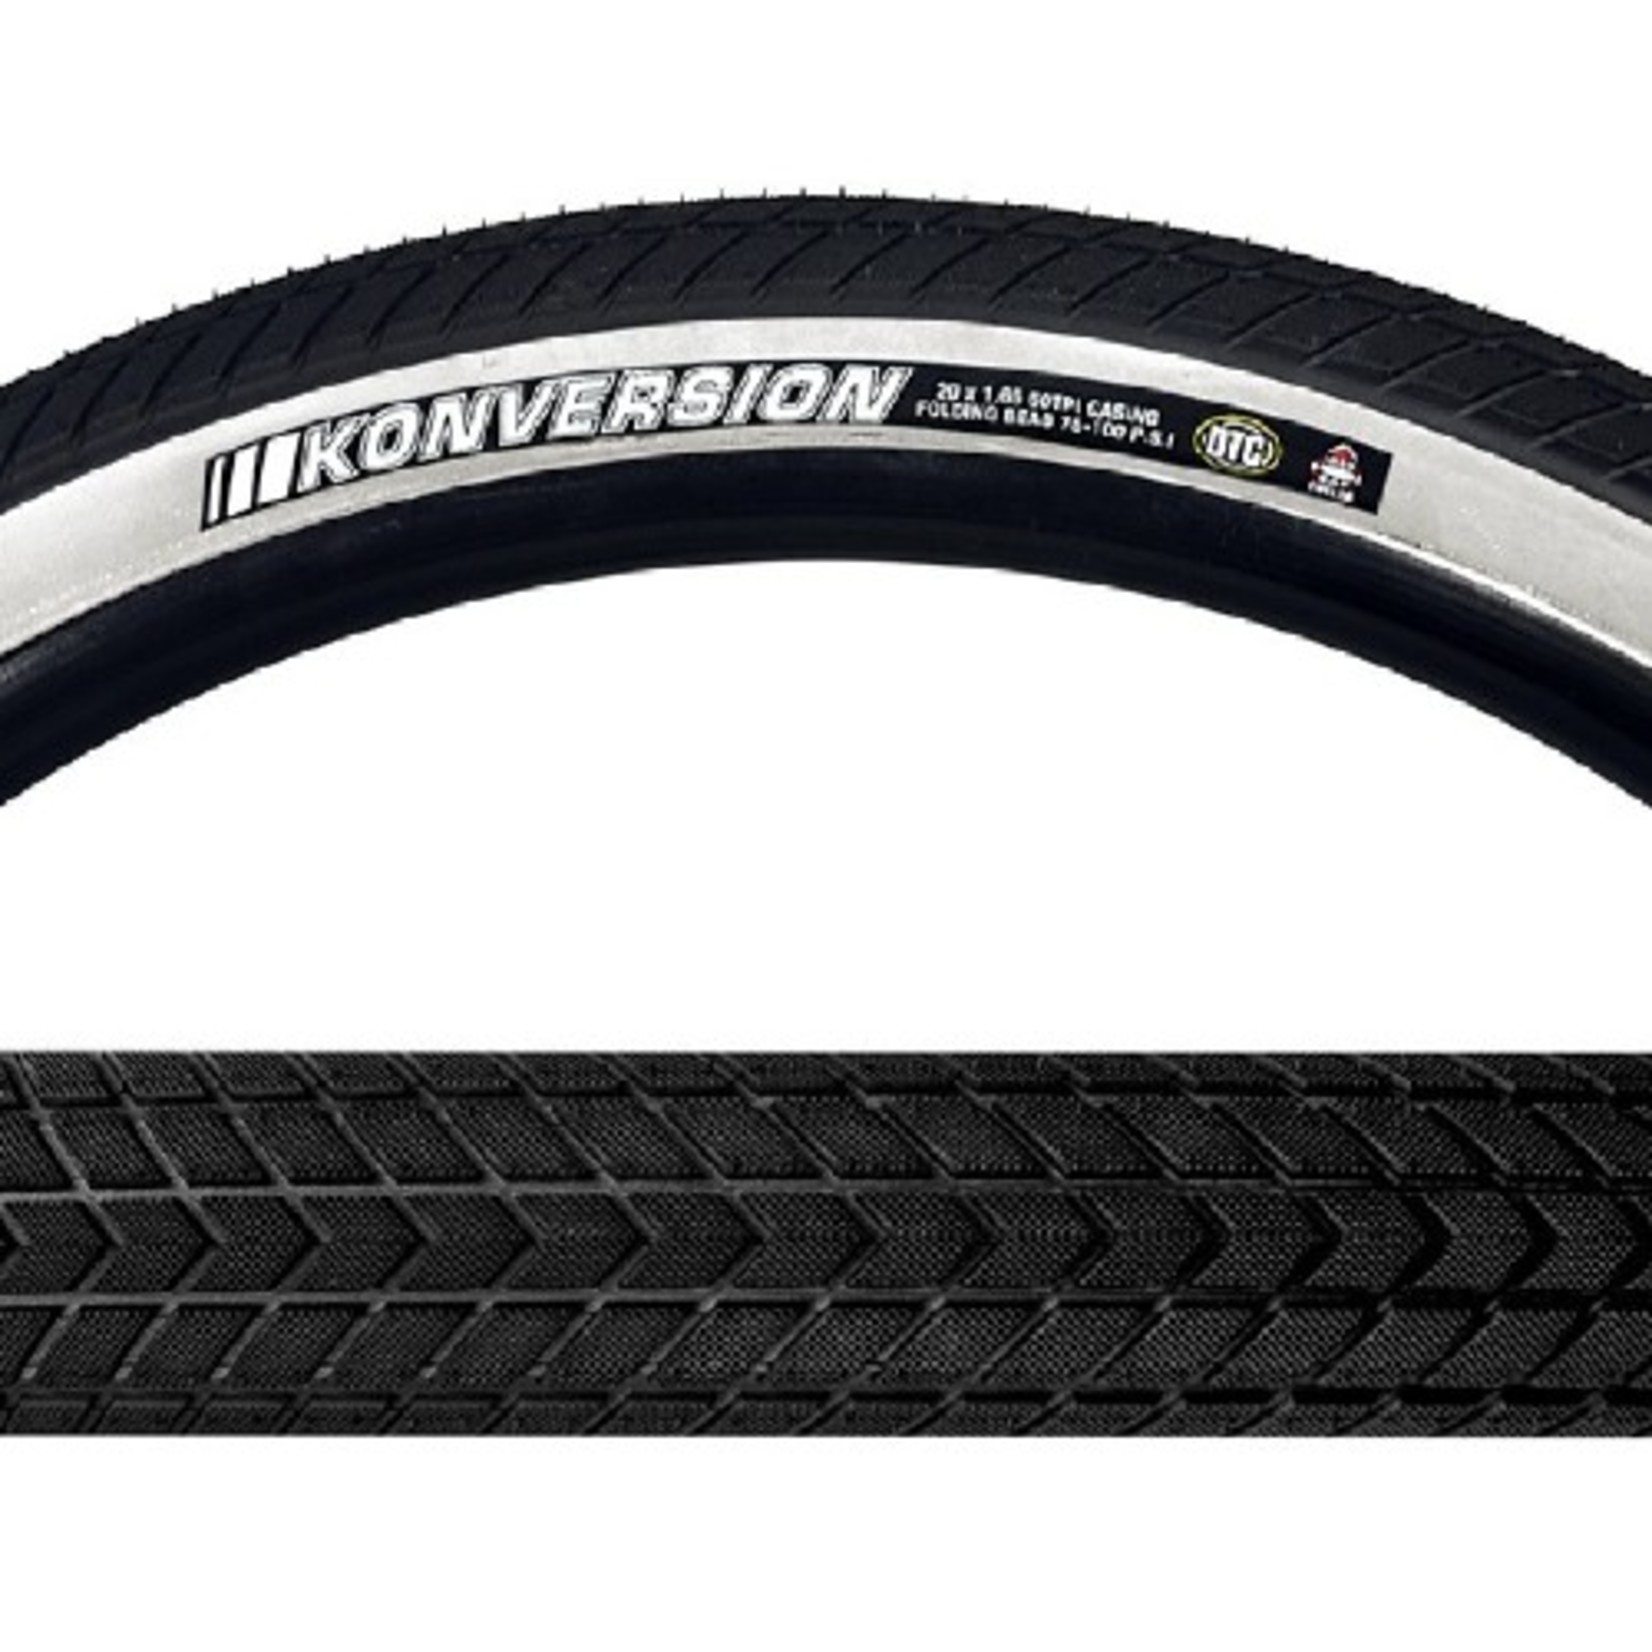 Kenda Konversion Fold Tire 20x1.65 Black/White